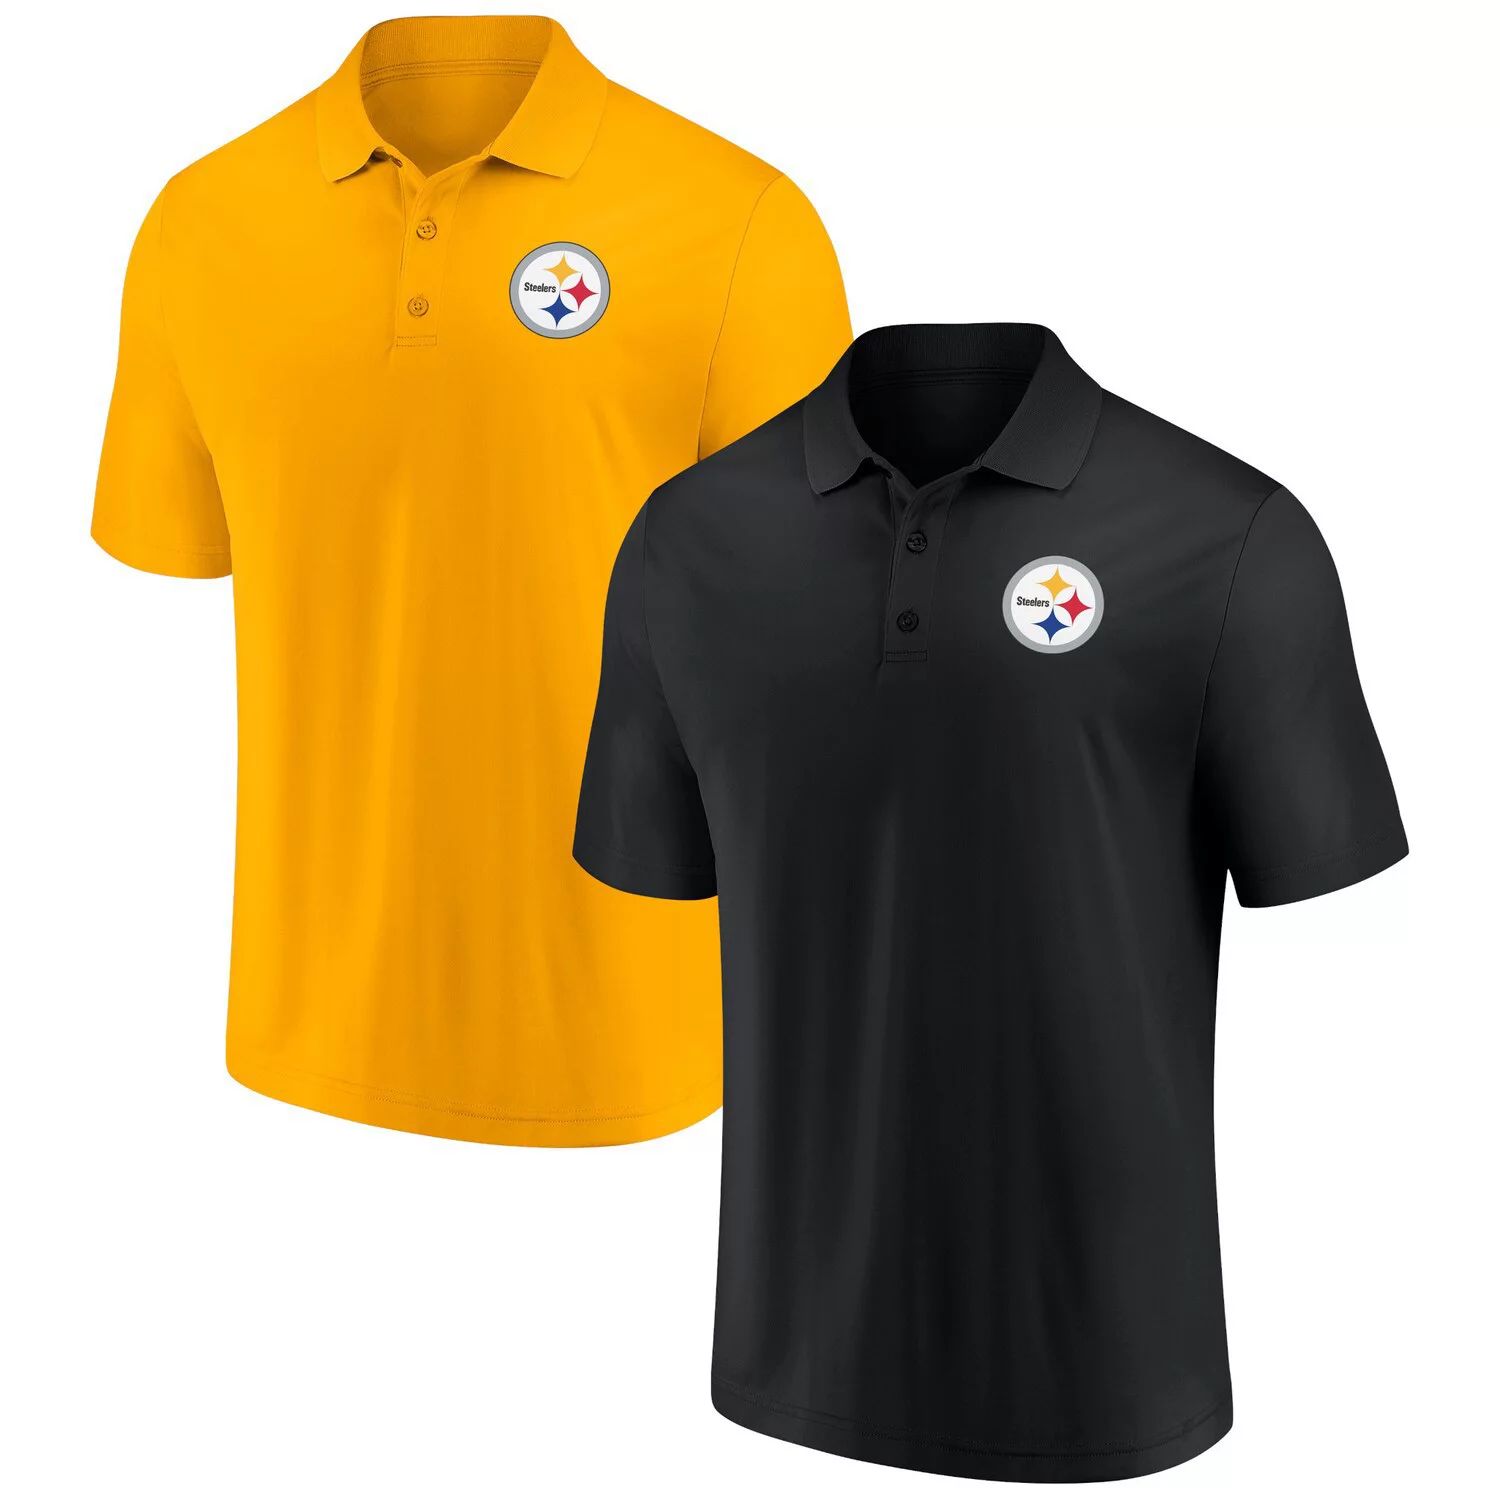 

Мужской комплект из 2 футболок-поло с логотипом Fanatics черного/золотого цвета «Питтсбург Стилерс» для дома и на выезде, Черный